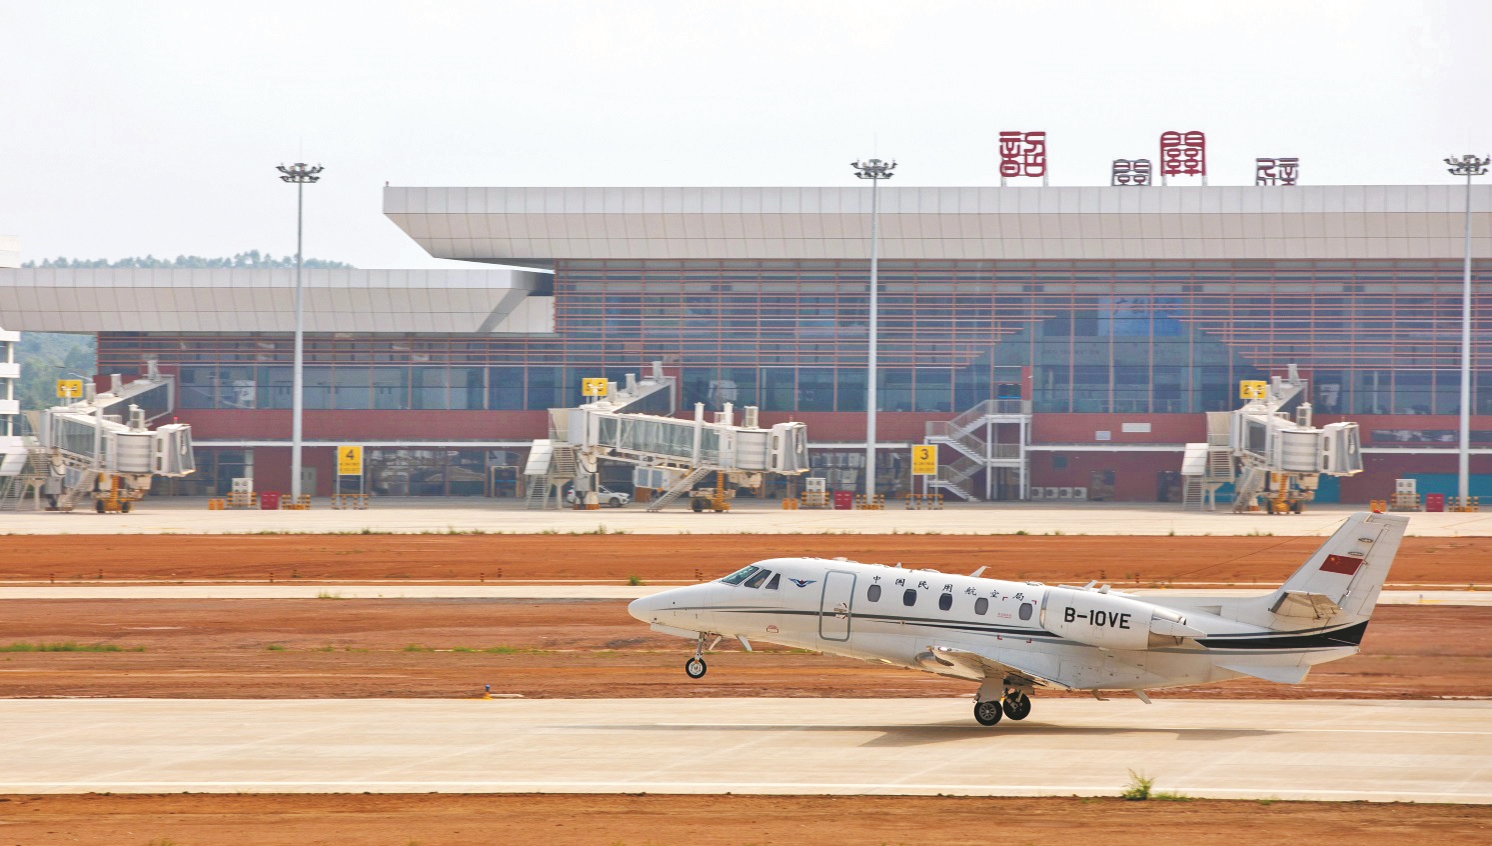 韶关丹霞机场校飞成功 力争早日通过行业验收,实现年内通航目标